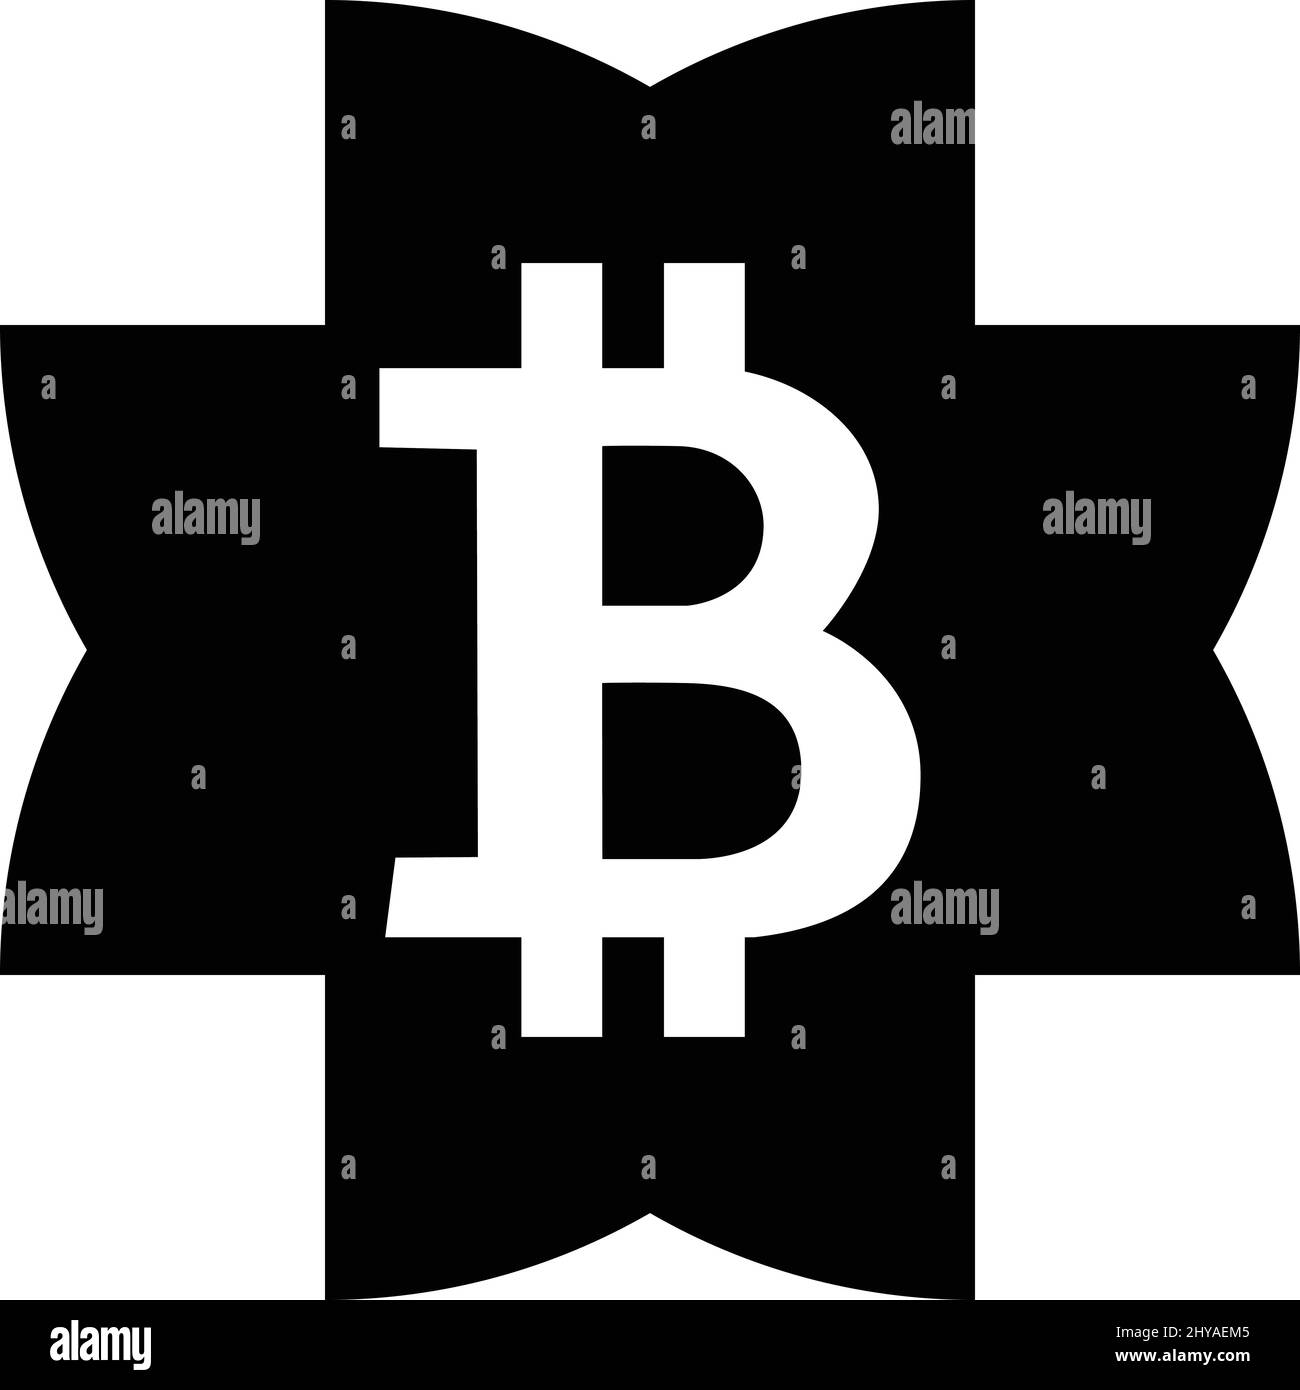 Bitcoin logo design Stock Vector